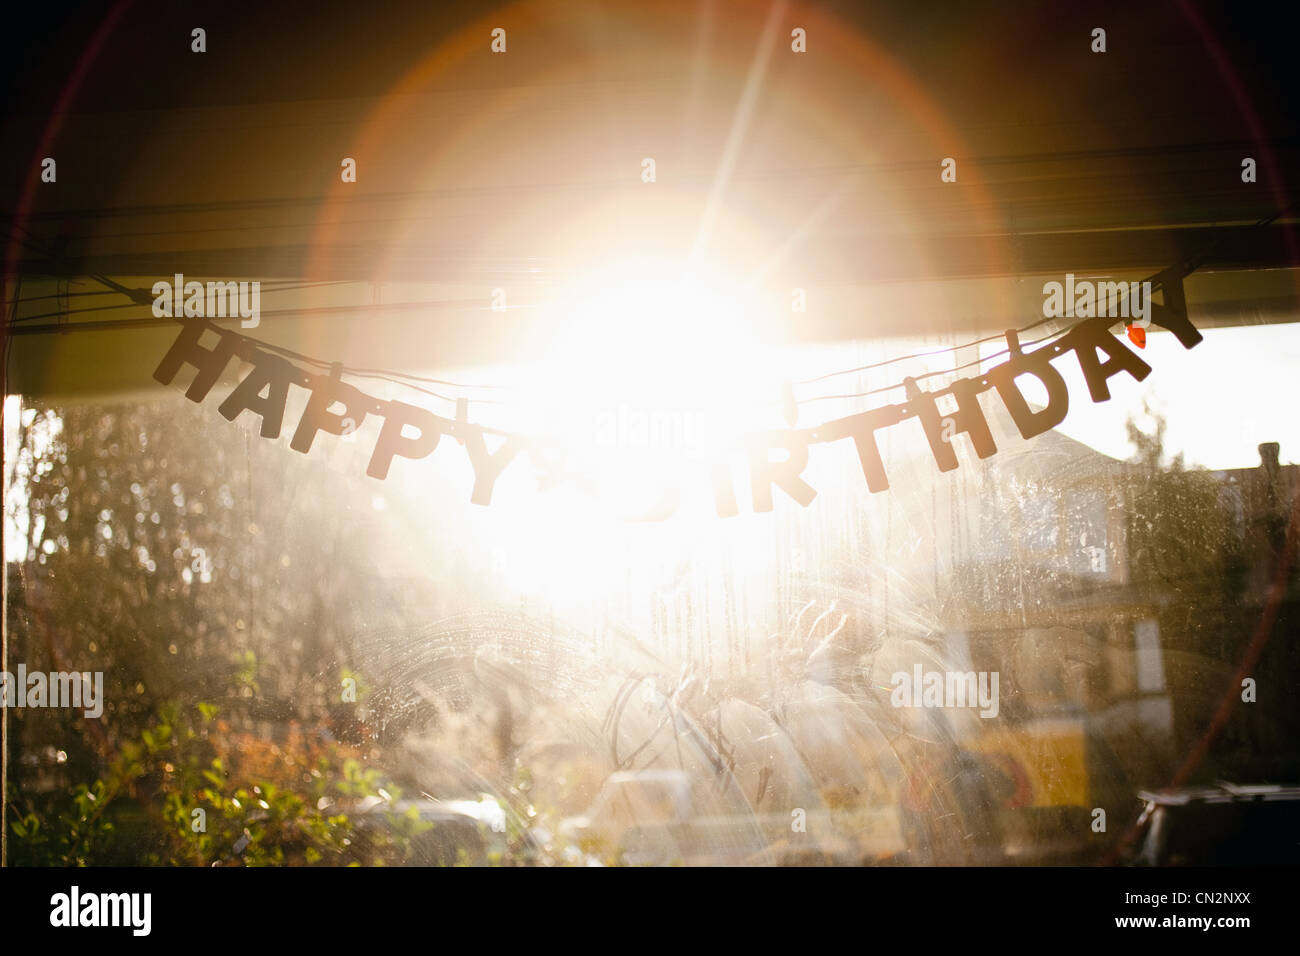 Compleanno banner appesi nella finestra Foto Stock